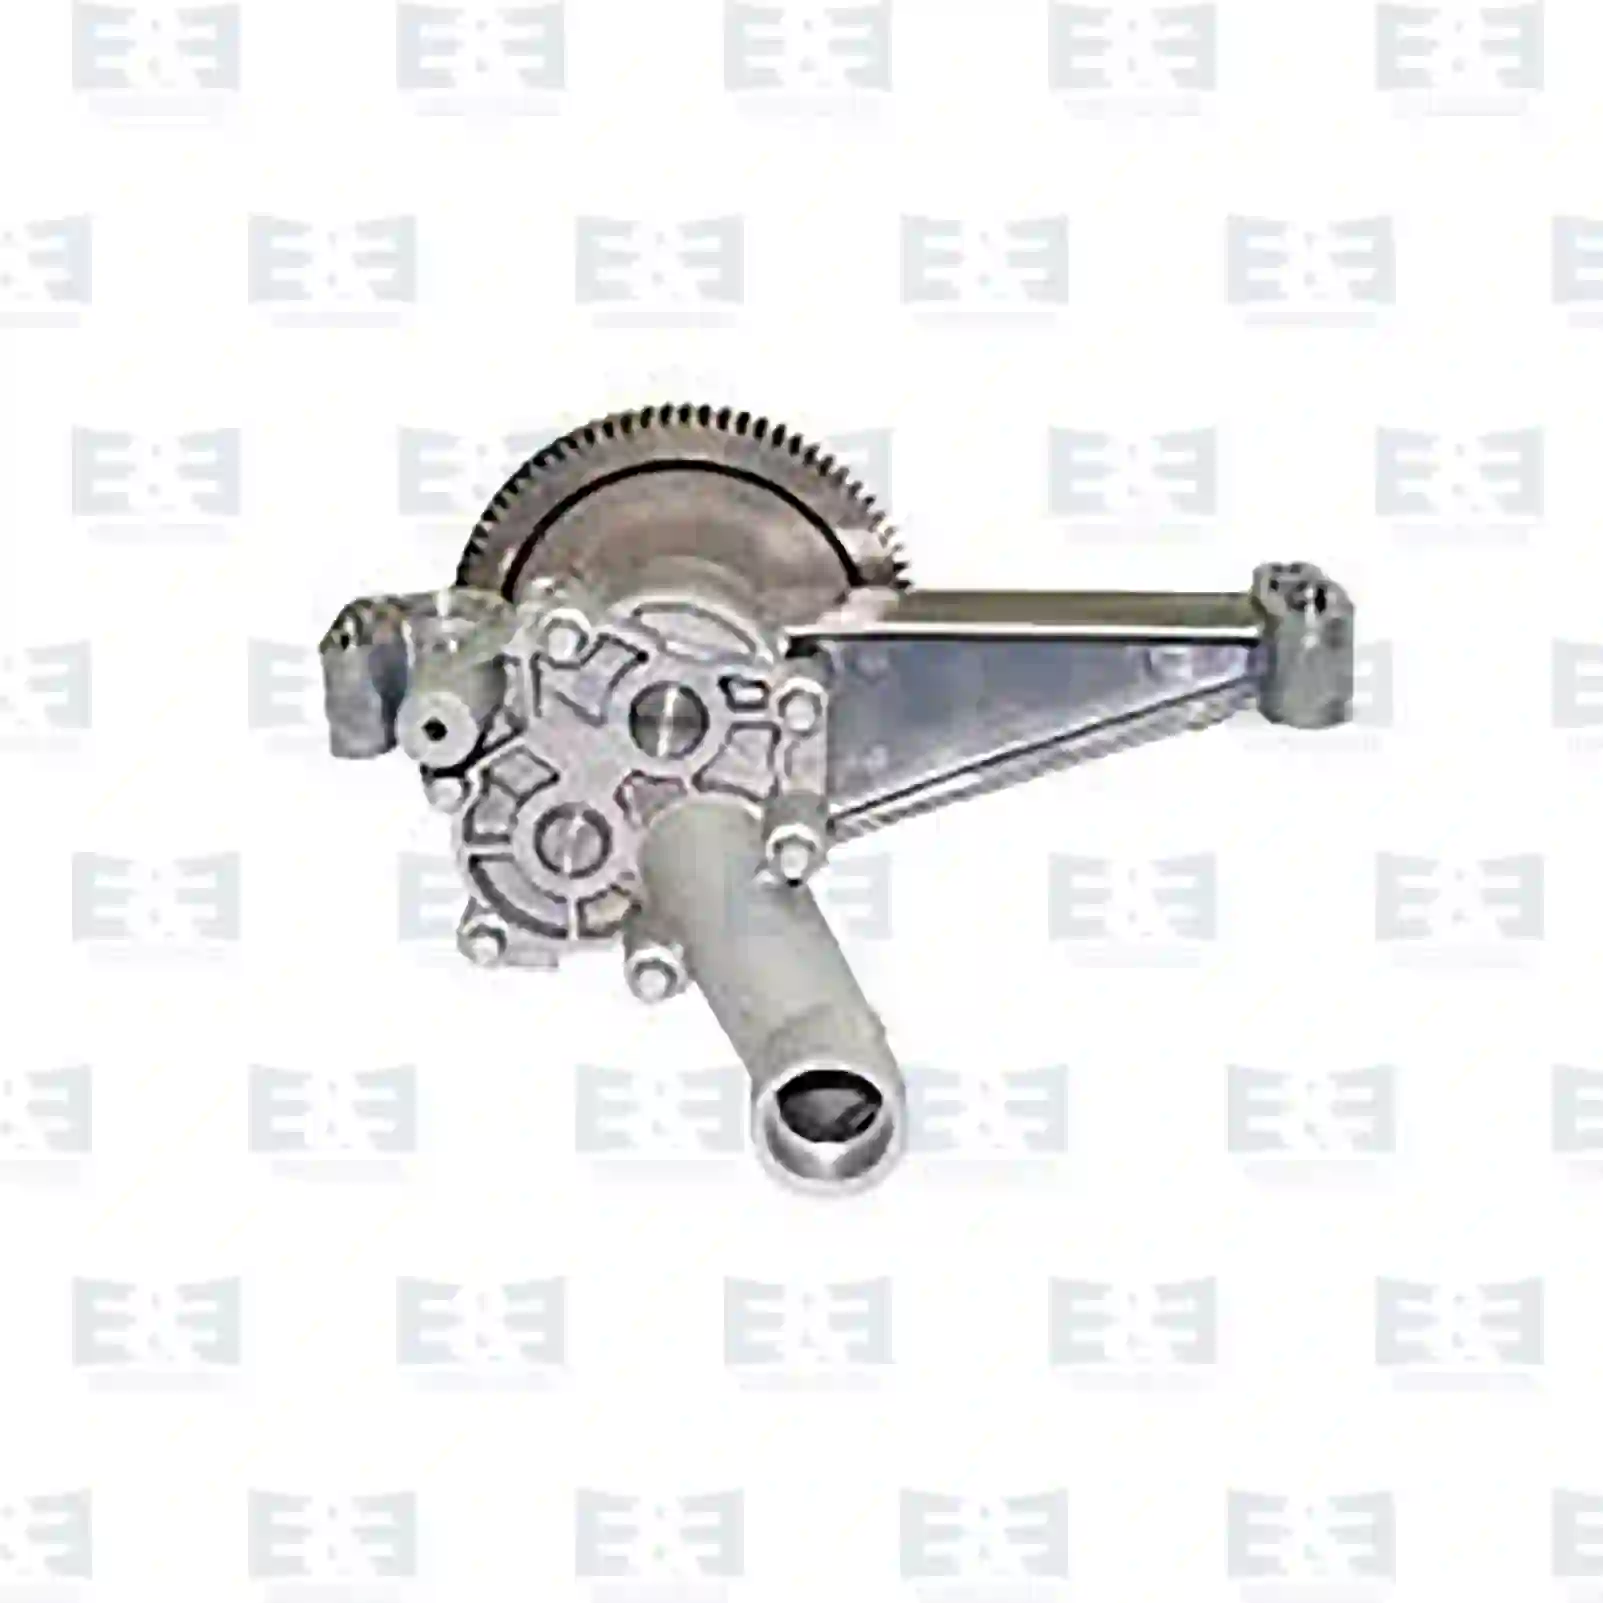  Oil pump || E&E Truck Spare Parts | Truck Spare Parts, Auotomotive Spare Parts